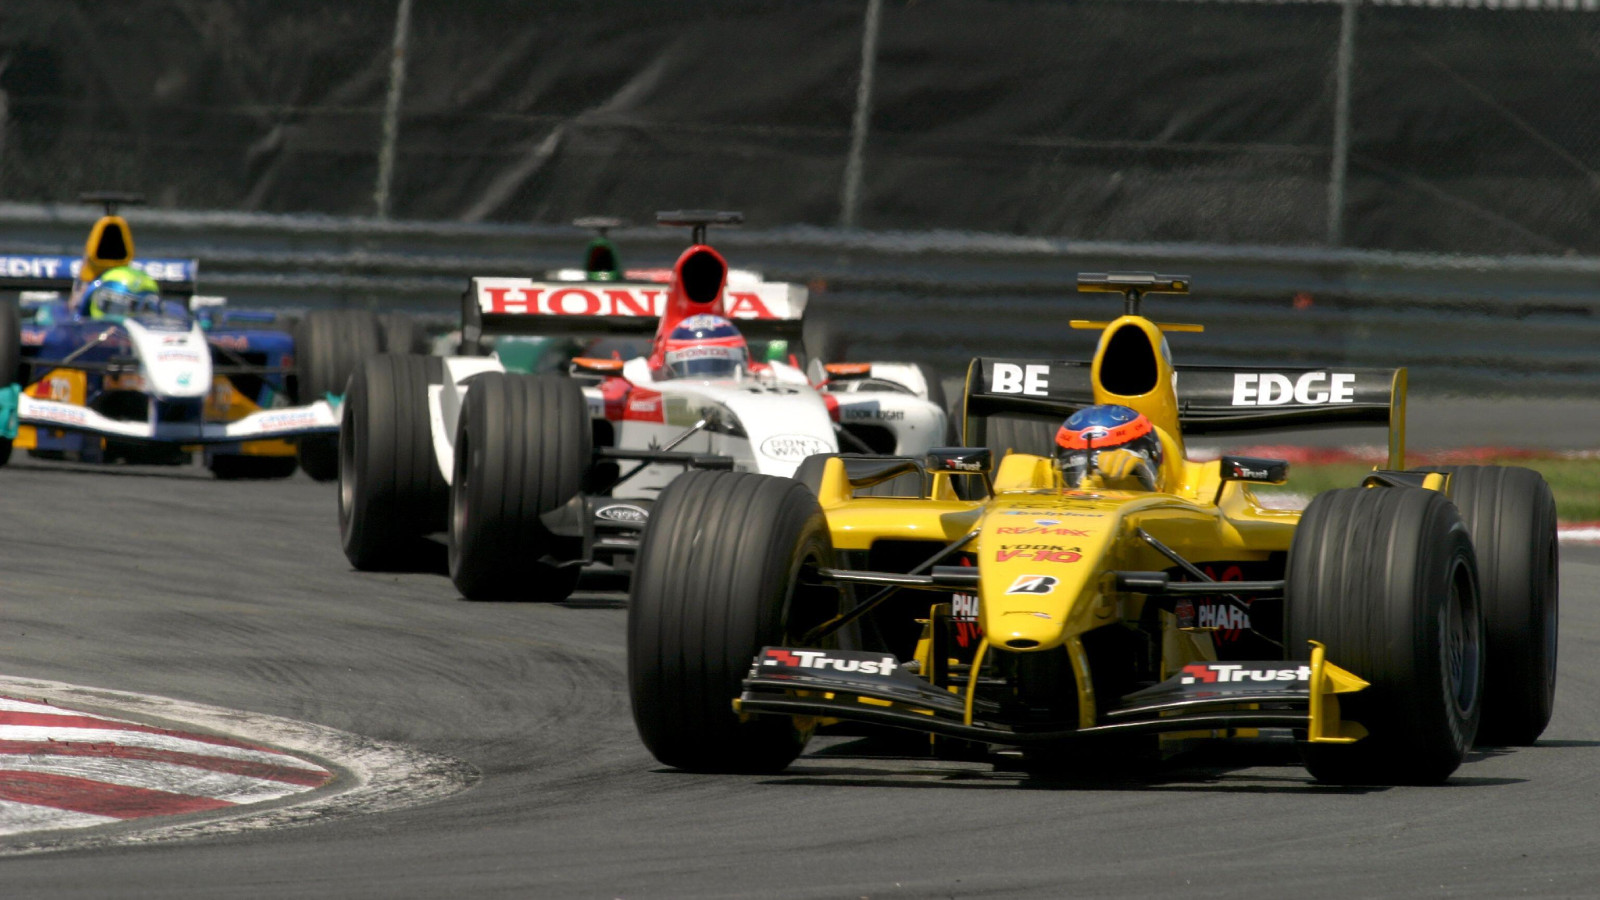 Jordan's Timo Glock races at the 2004 Canadian Grand Prix. Montreal, June 2004.